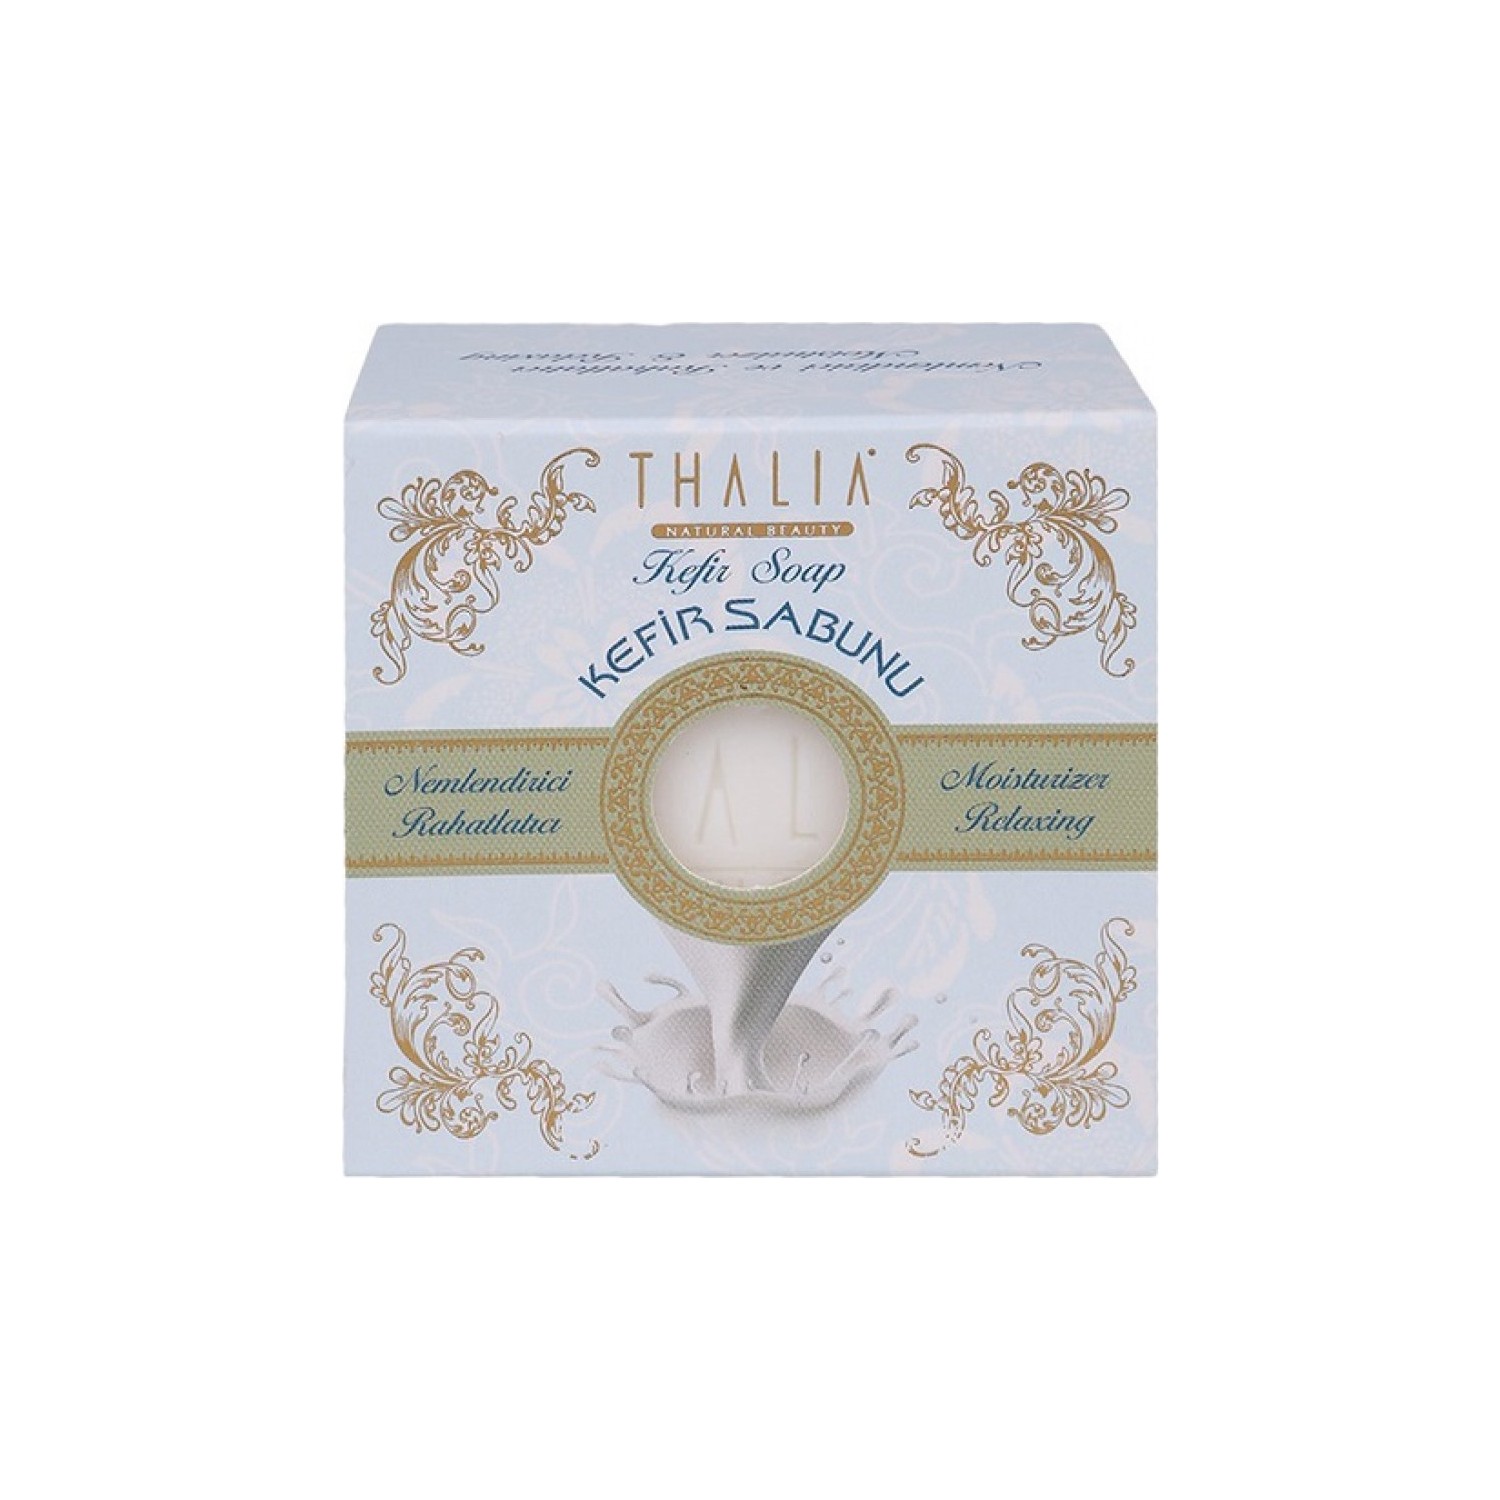 мыло thalia натуральное с экстрактом козьего молока 3 упаковки Натуральное мыло Thalia с экстрактом кефира